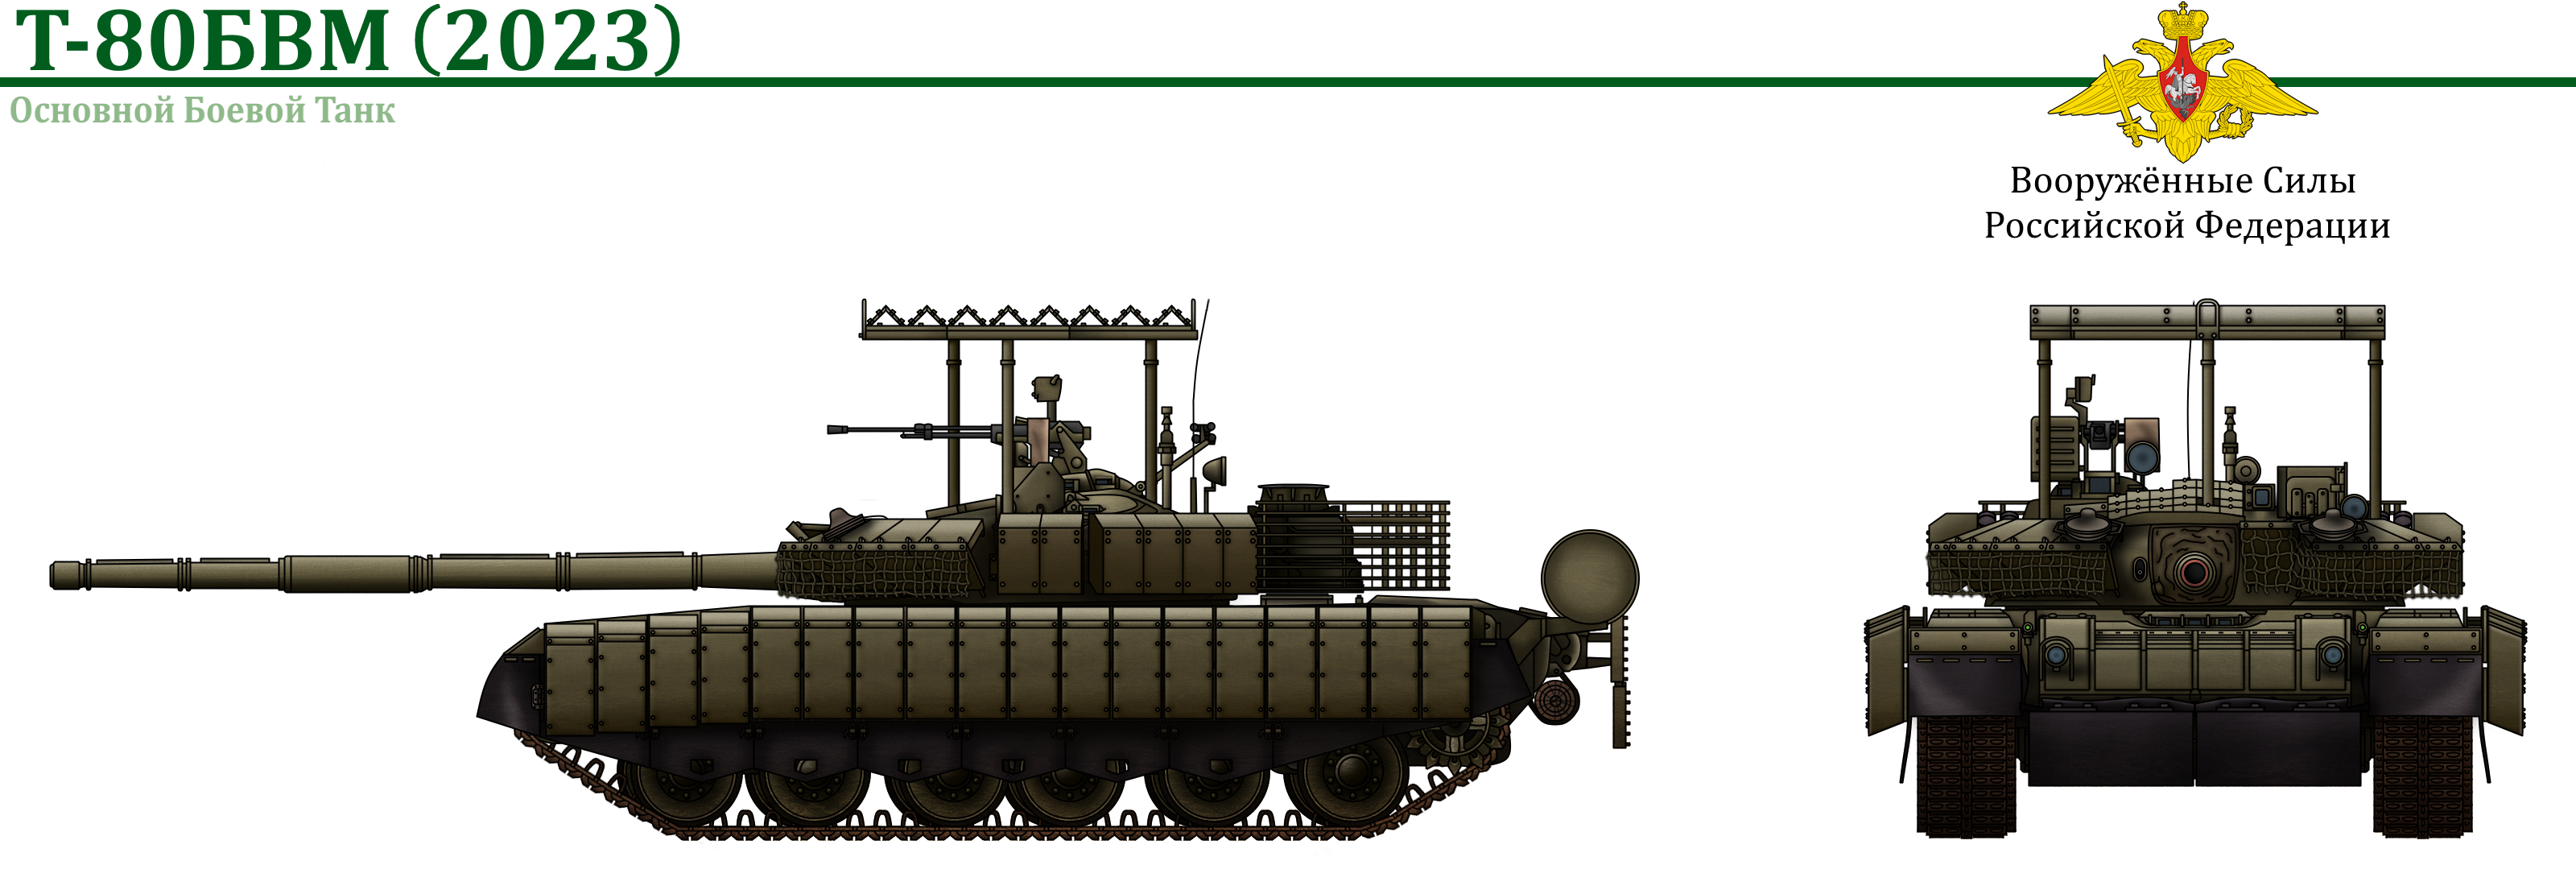 Все (почти) иллюстрации модификаций богоподобного танка Т-80